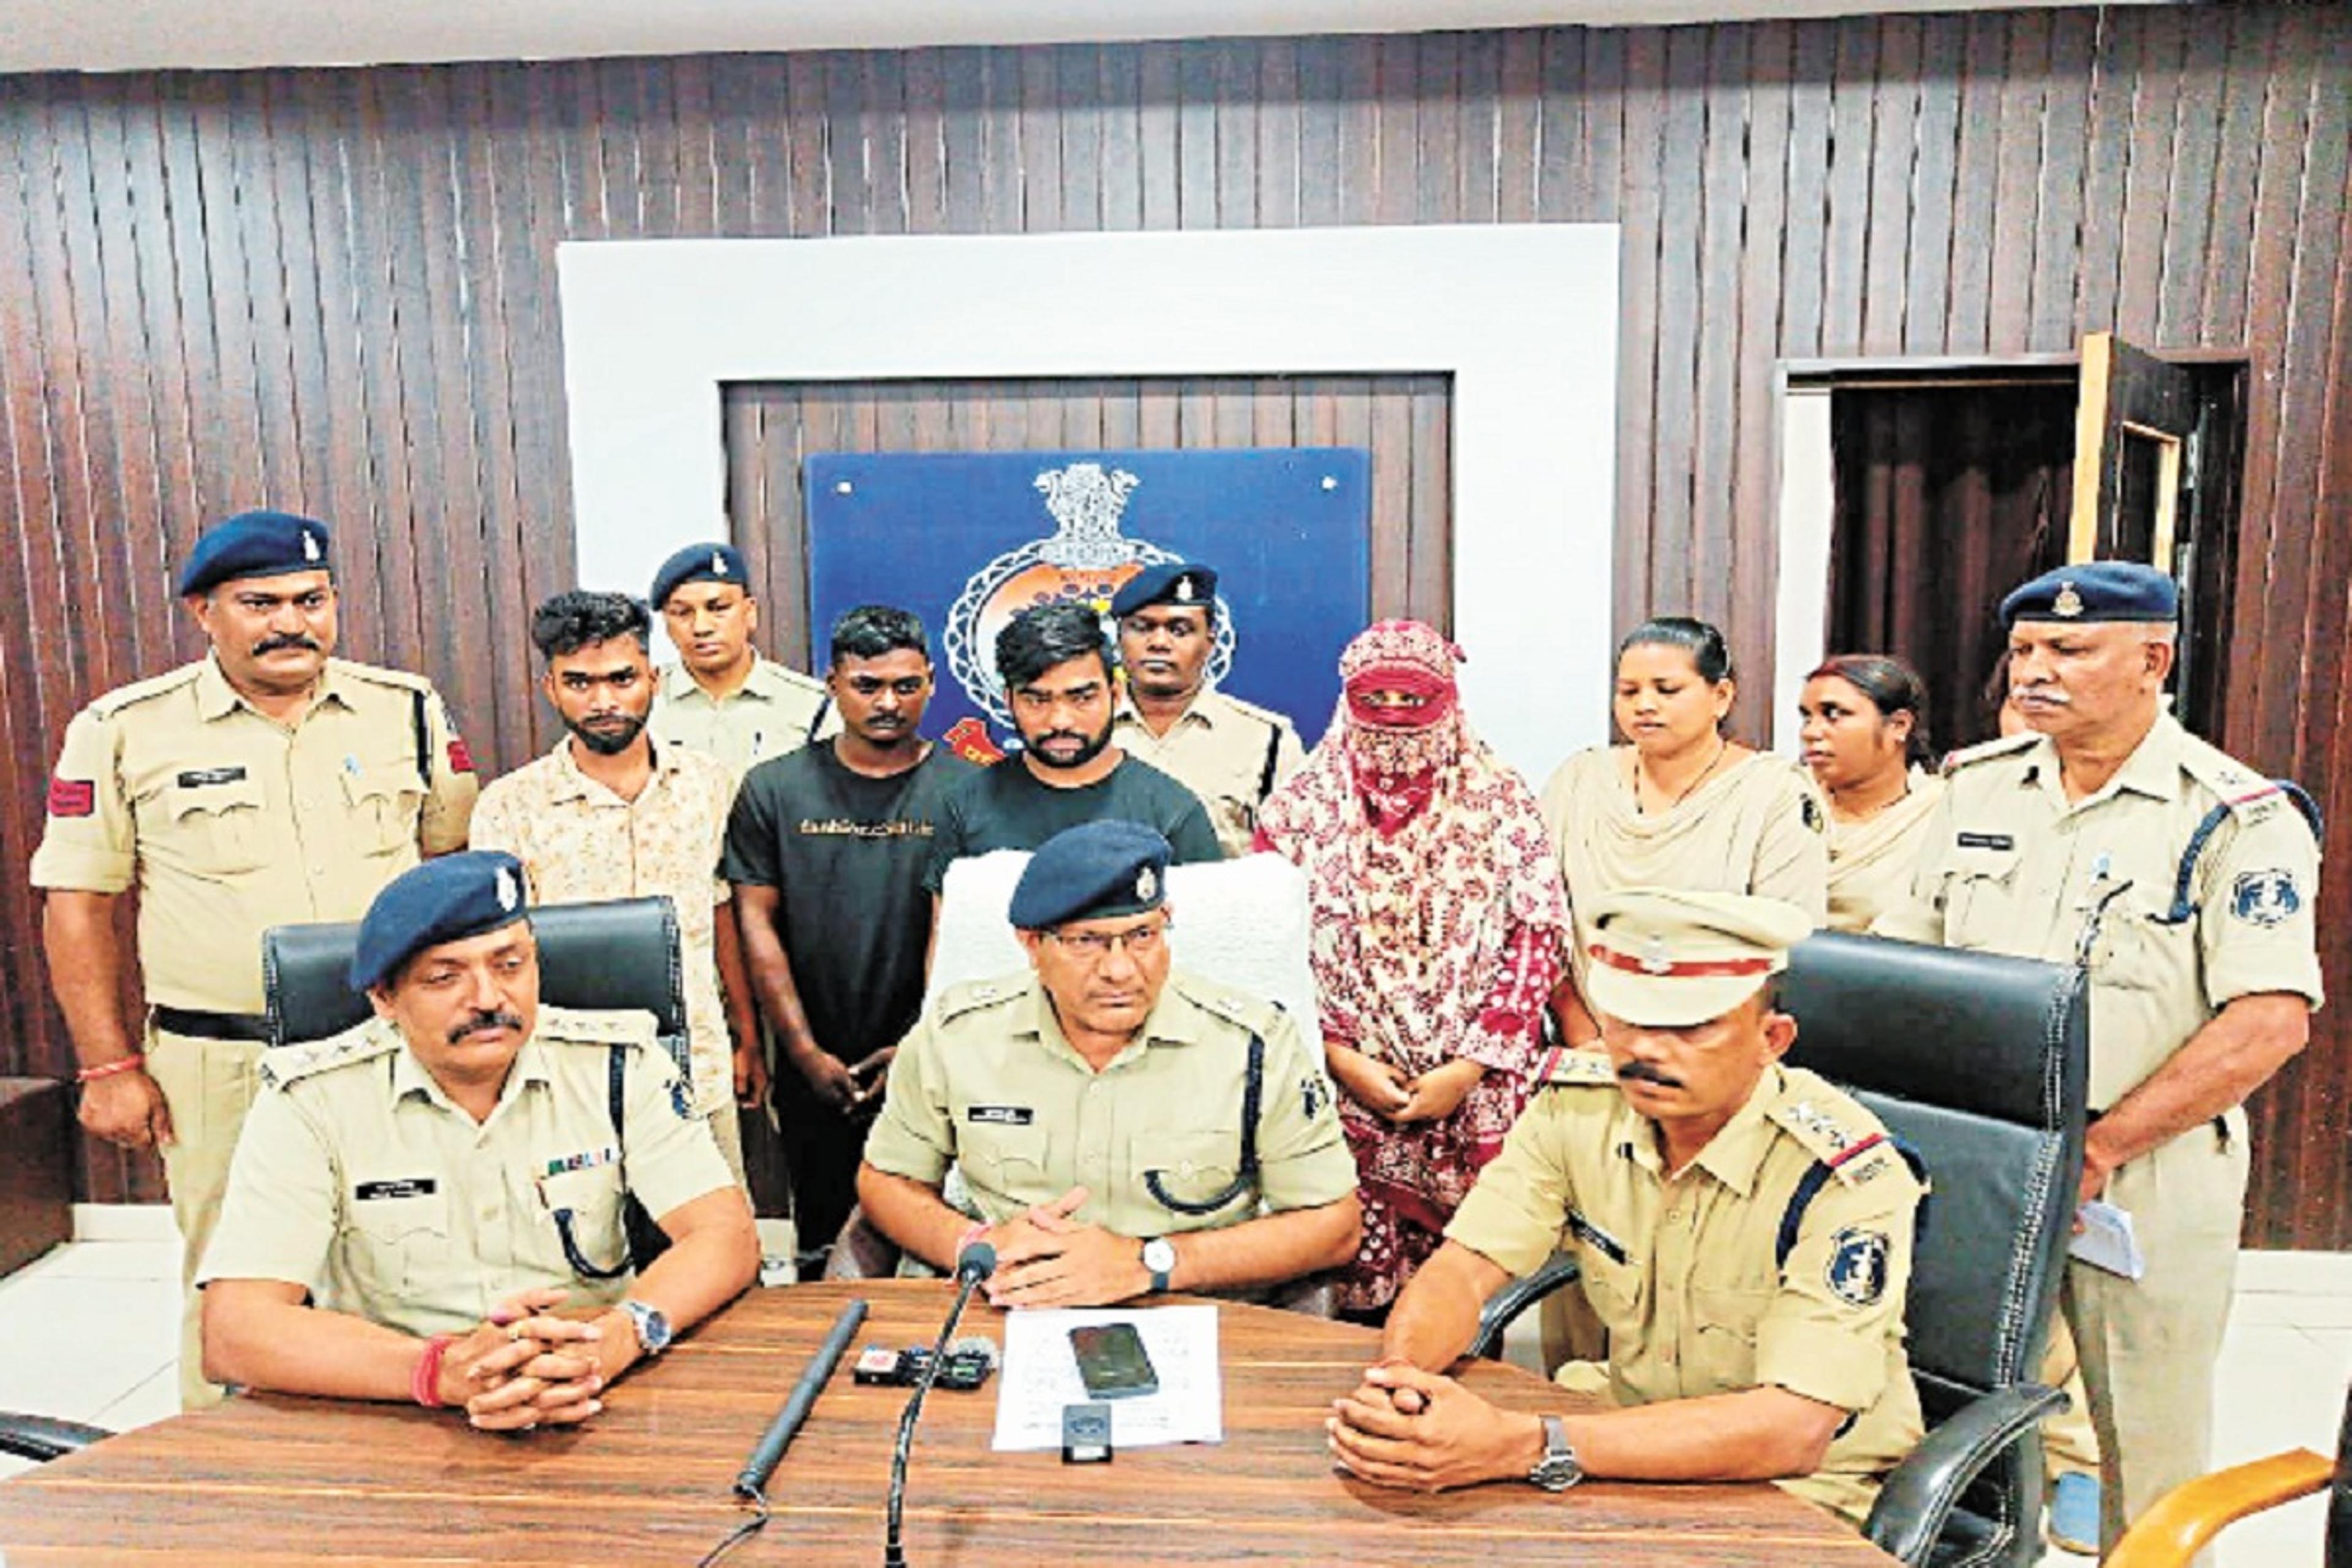 CG Murder Case: 50,000 रुपए की सुपारी देकर शौहर की हत्या, सामने खड़े मजे लेकर देख
रही थी बेगम, मौके पर पहुंची पुलिस